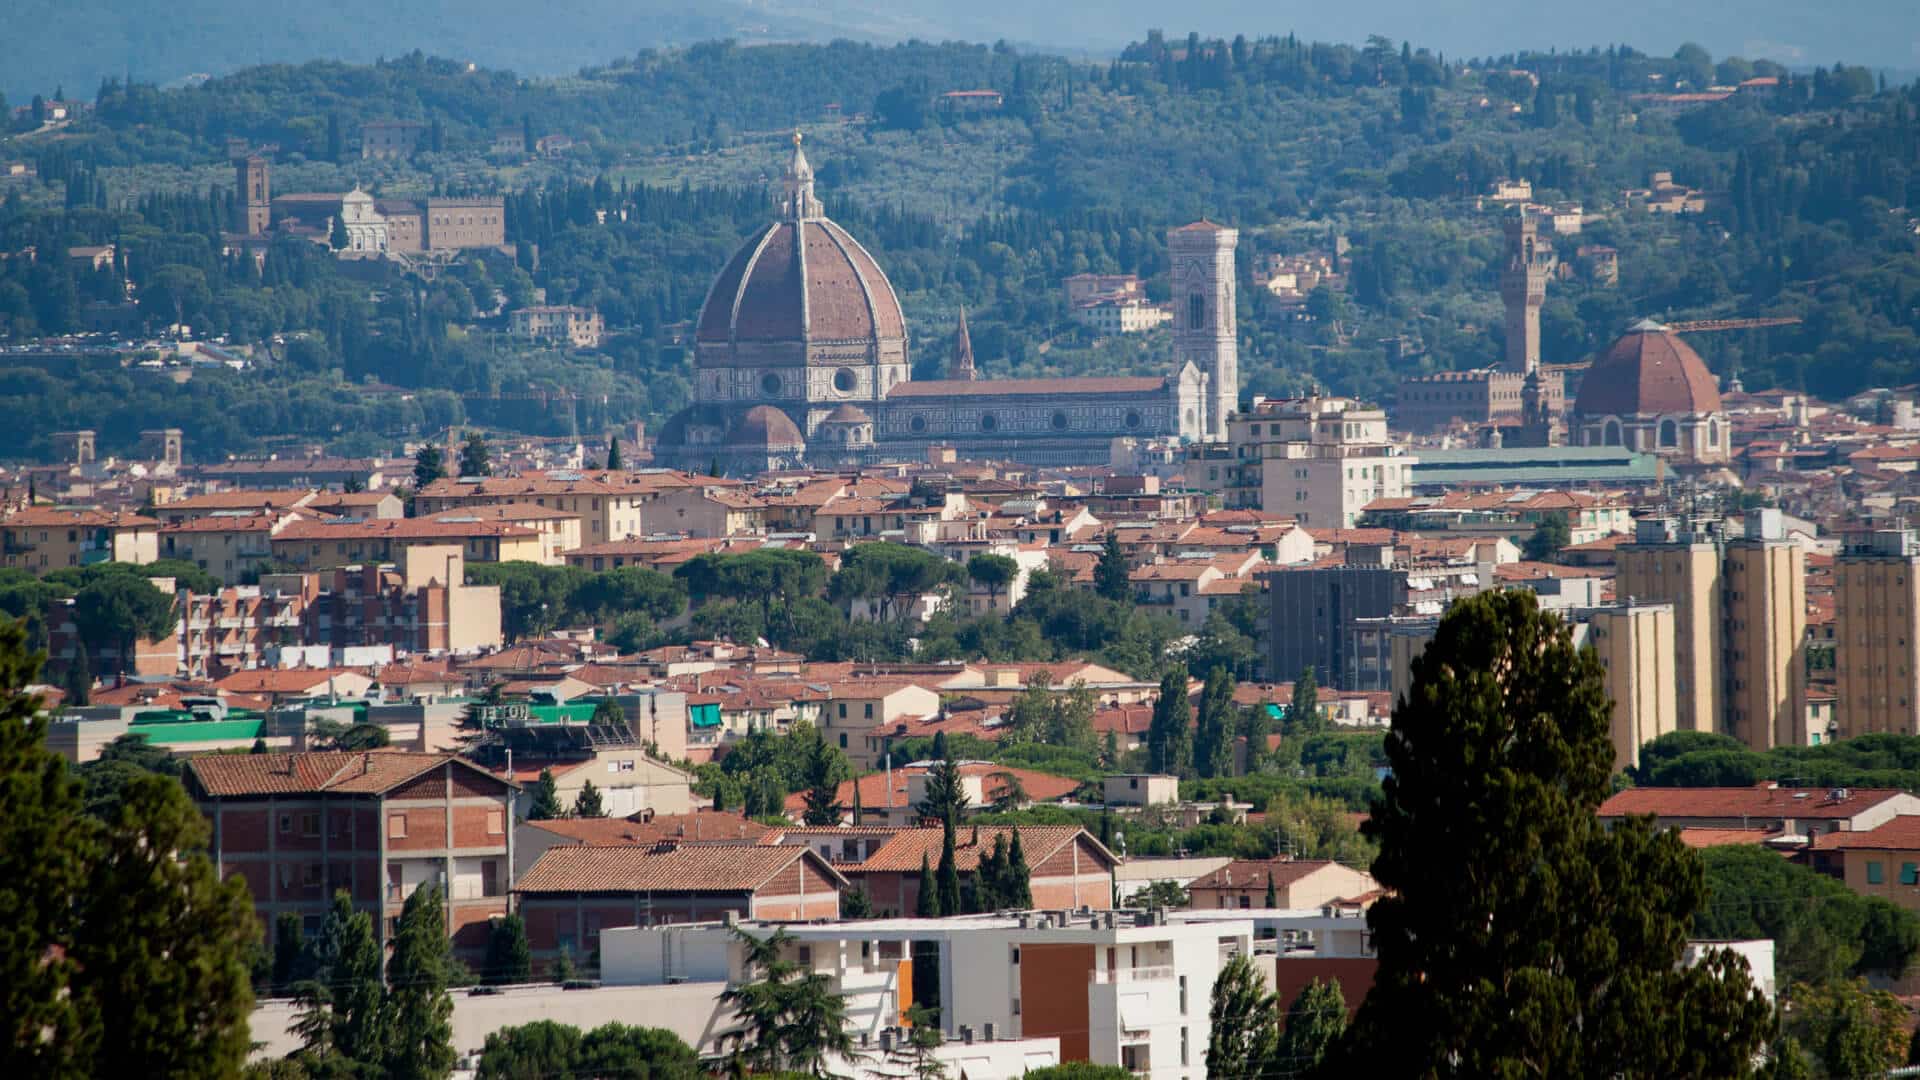 Scopri tutti gli immobili a Sesto Fiorentino vicino a Firenze sul portale immobiliare di Idee & Immobili